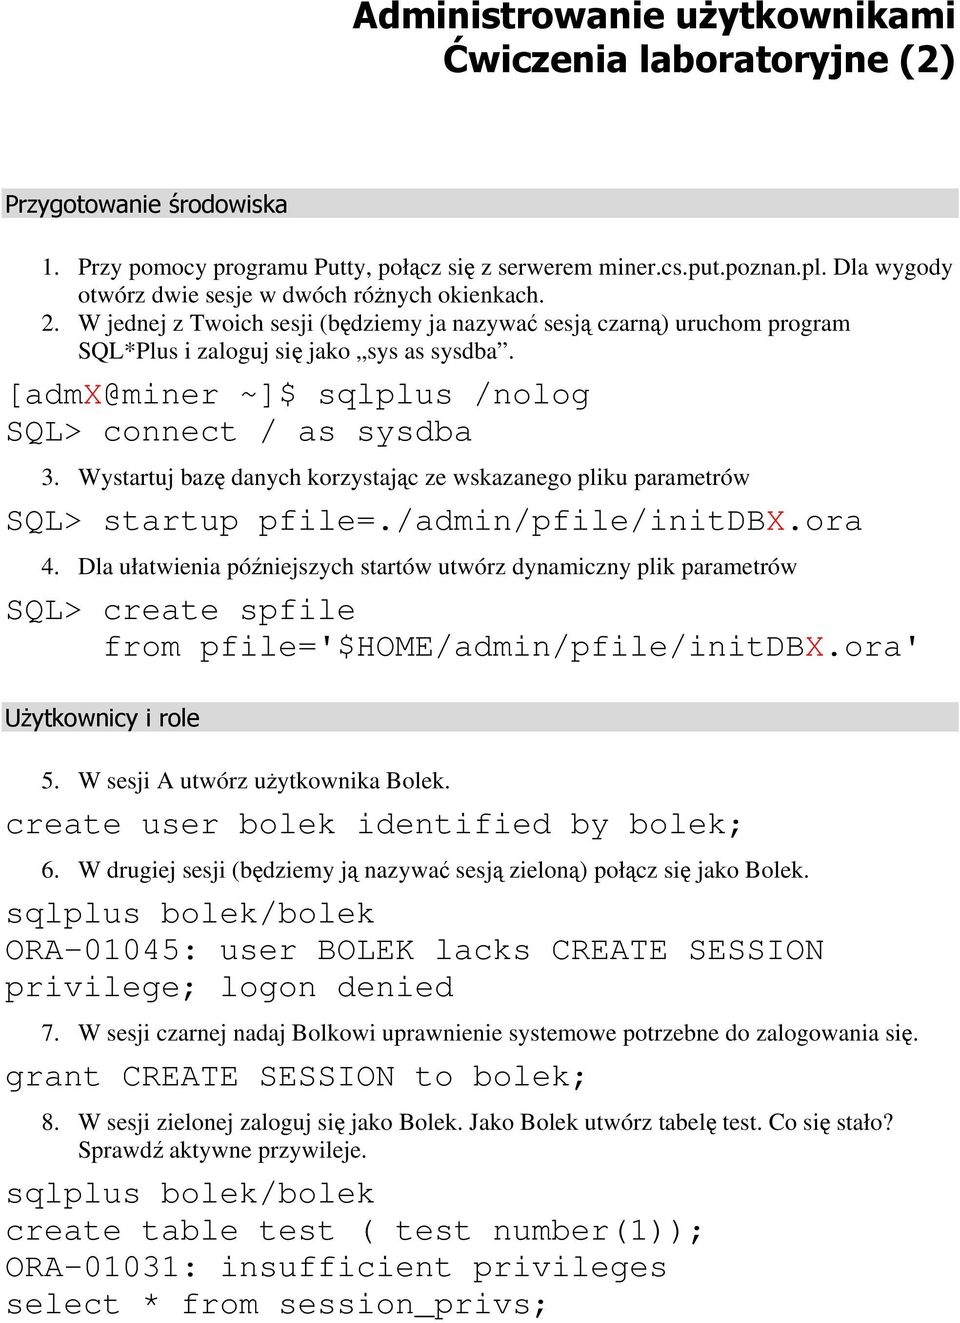 [admx@miner ~]$ sqlplus /nolog SQL> connect / as sysdba 3. Wystartuj bazę danych korzystając ze wskazanego pliku parametrów SQL> startup pfile=./admin/pfile/initdbx.ora 4.